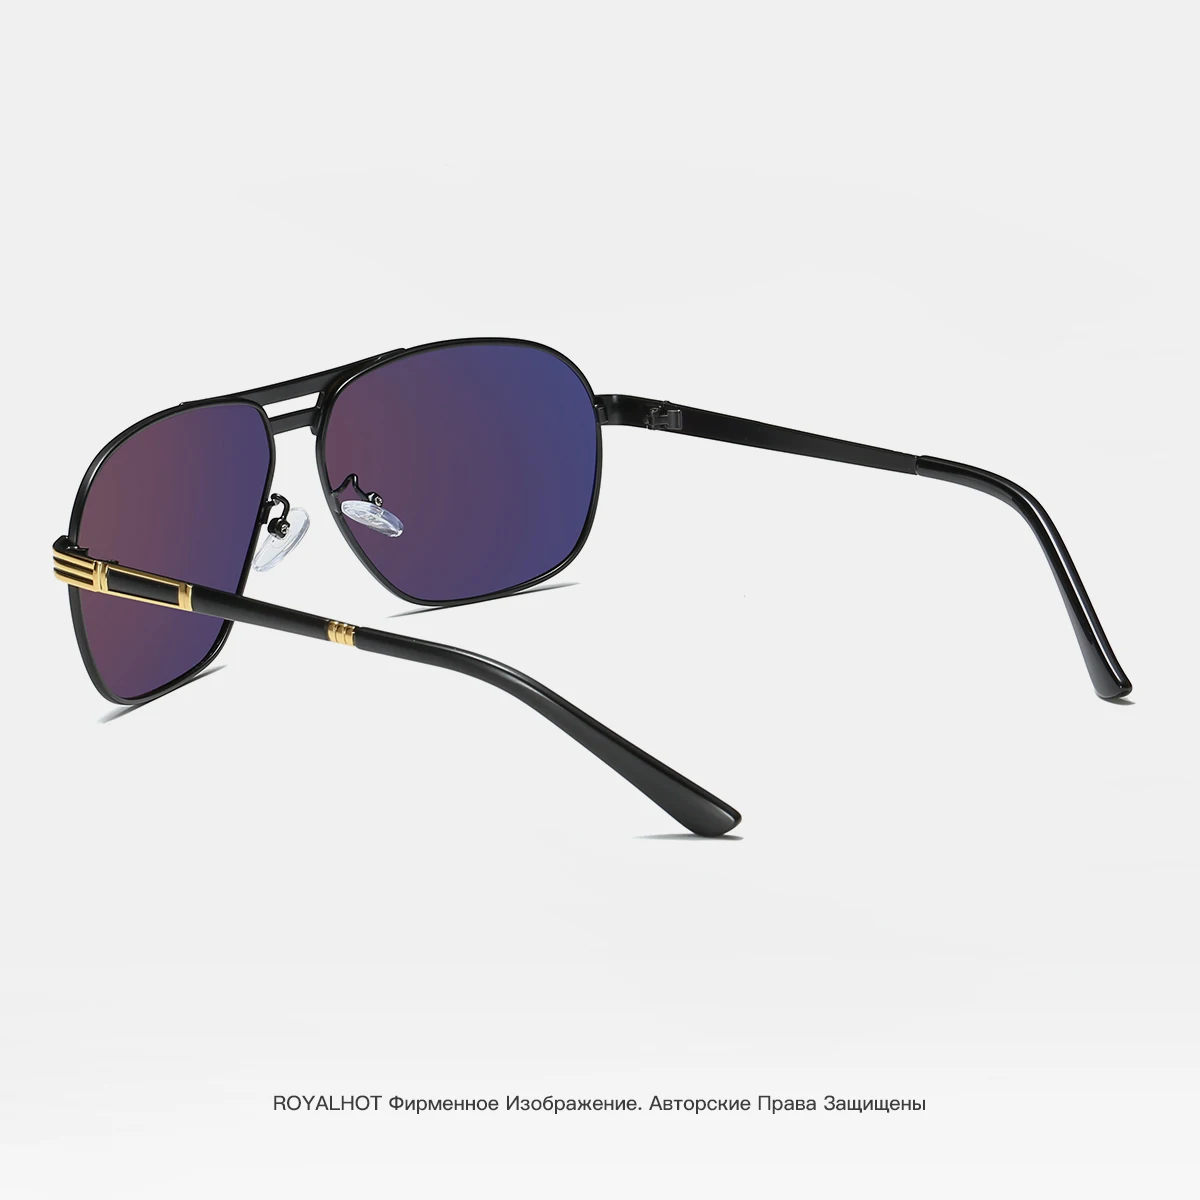 RoyalHot, мужские и женские поляризованные солнцезащитные очки, овальная оправа, солнцезащитные очки, очки для вождения, солнцезащитные очки, мужские очки, 90092